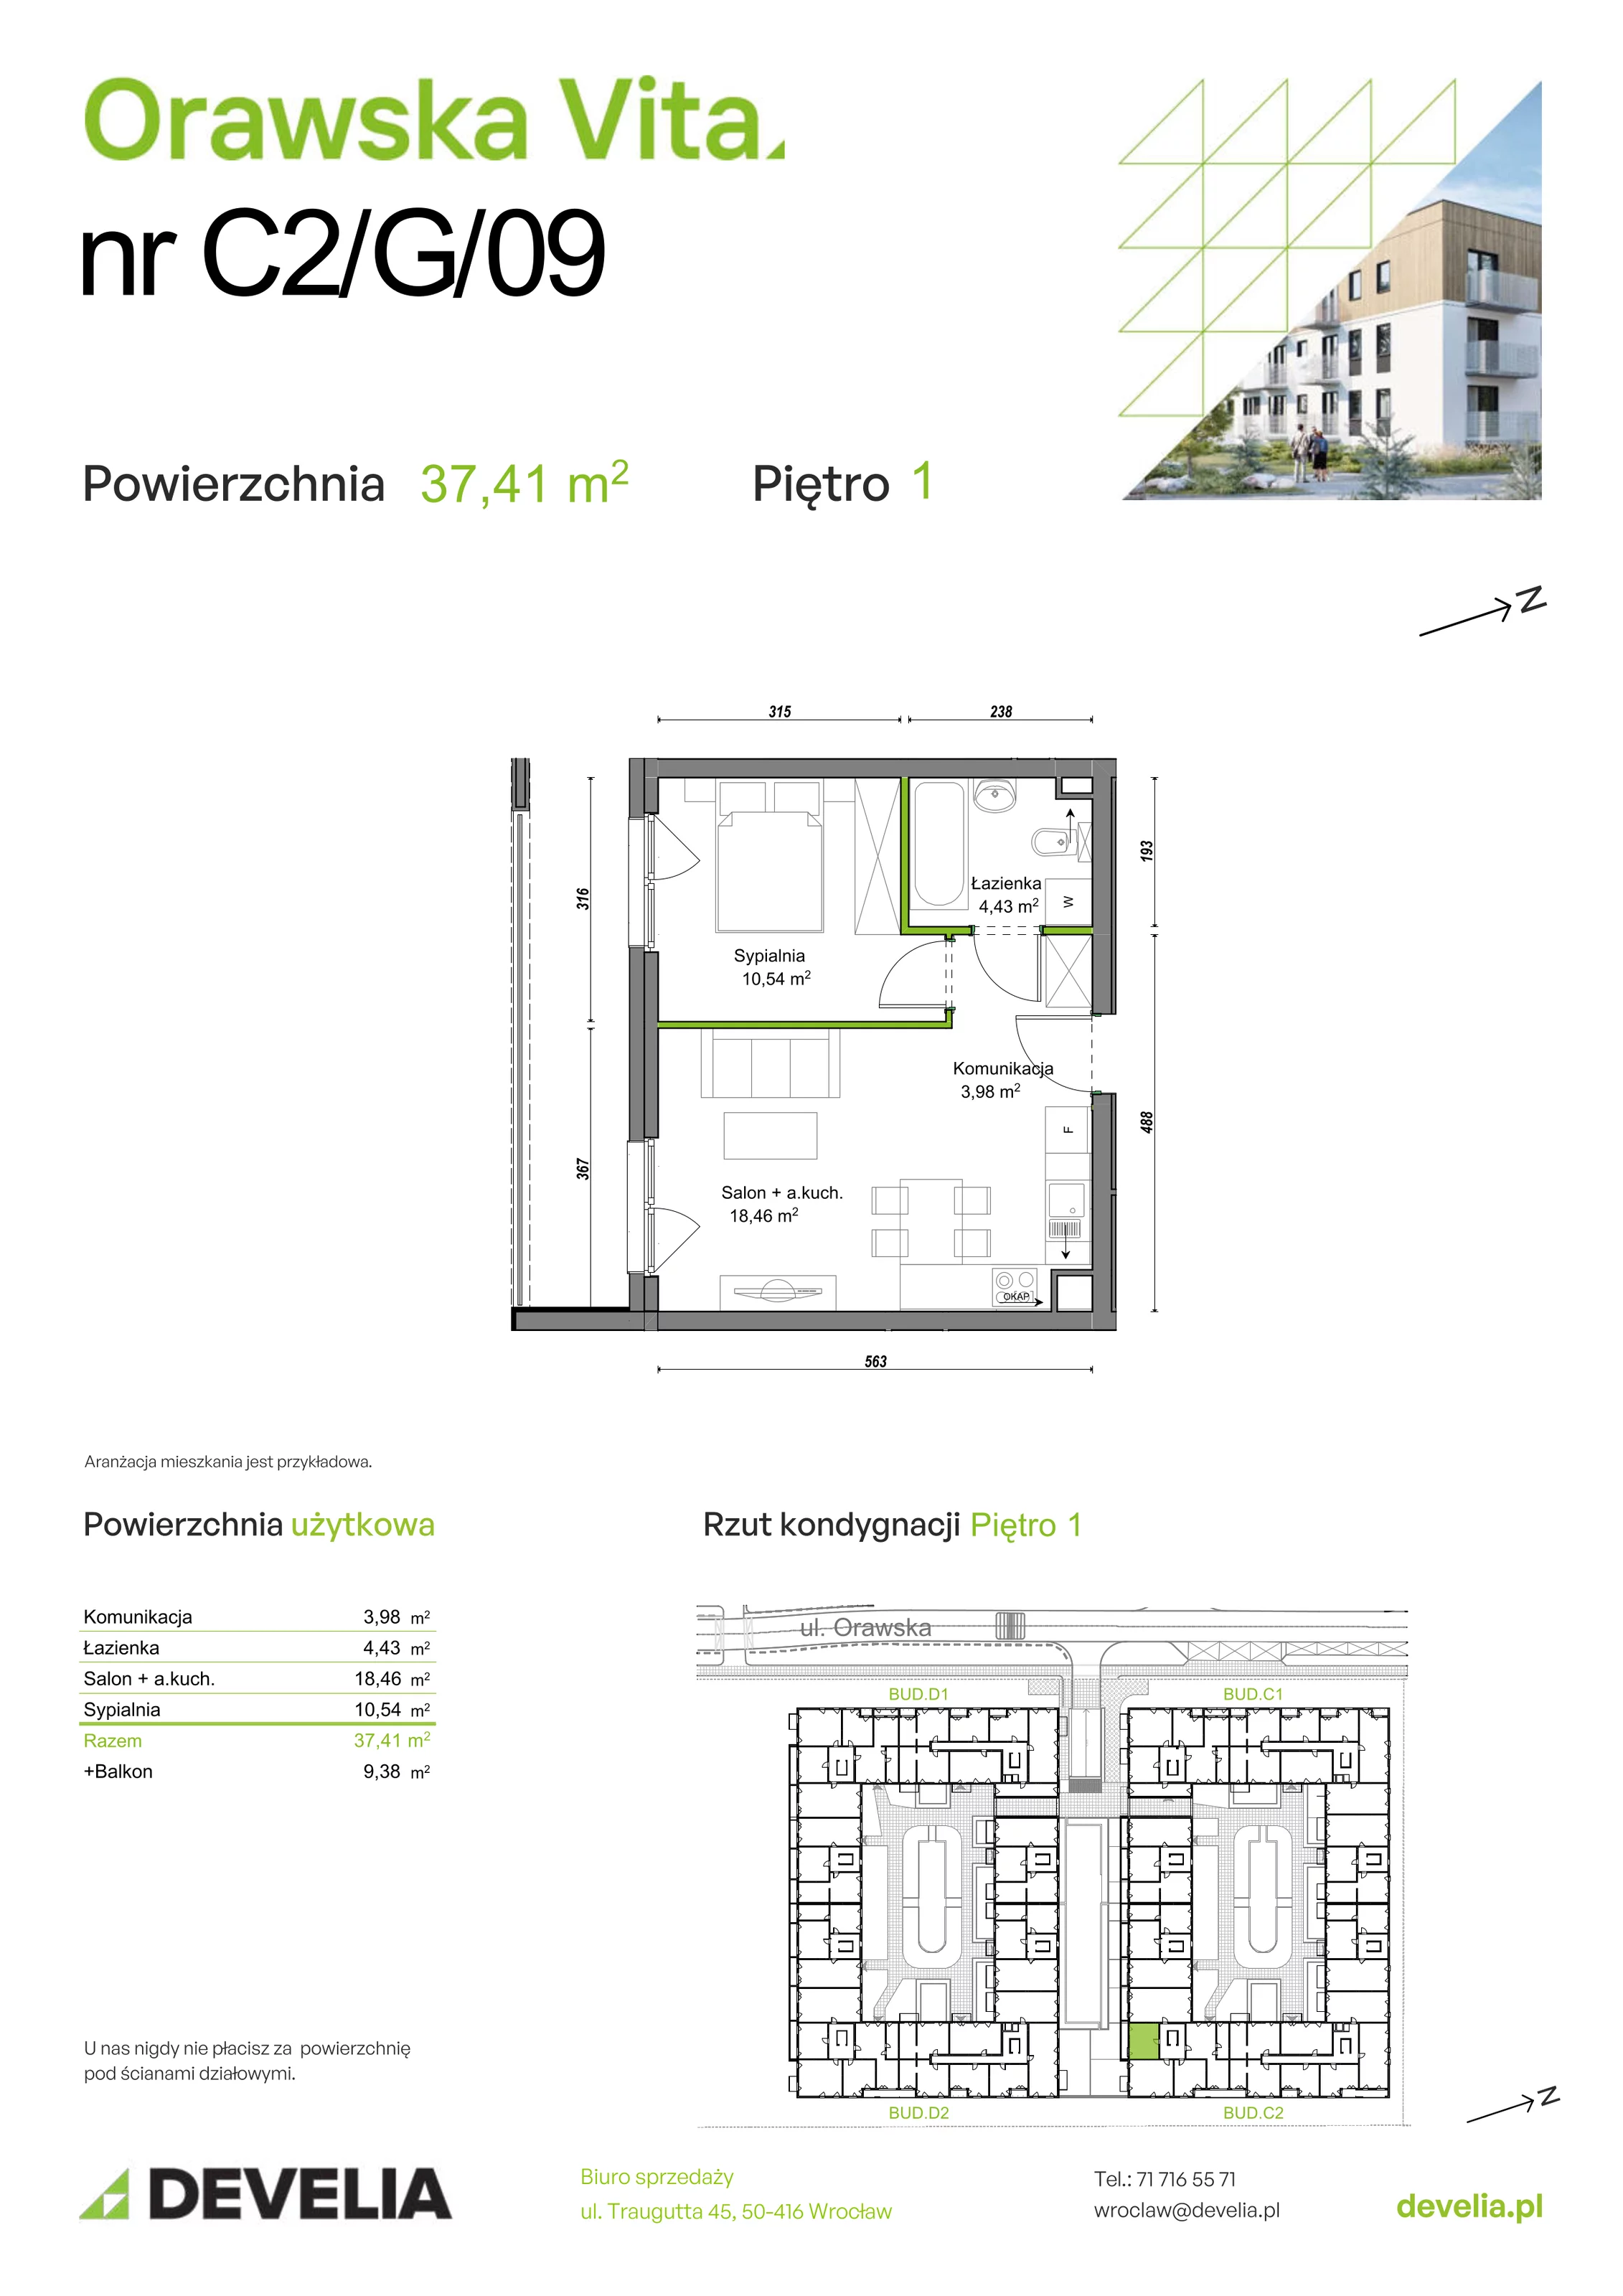 Mieszkanie 37,41 m², piętro 1, oferta nr C2/G/09, Orawska Vita, Wrocław, Ołtaszyn, Krzyki, ul. Orawska 73